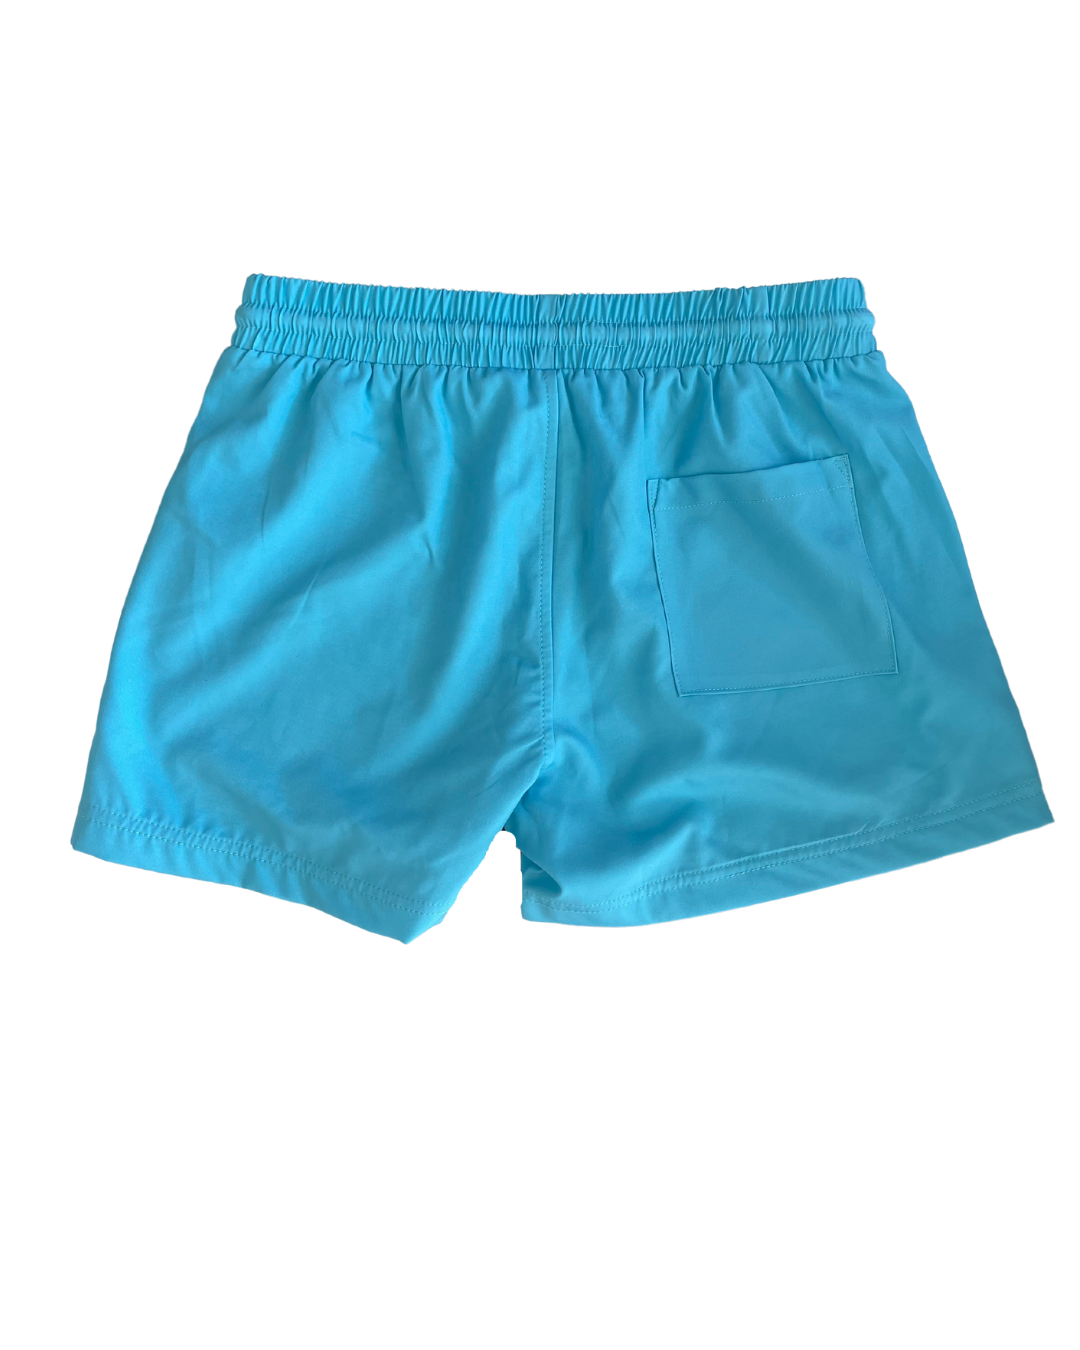 Sky Blue Shorts (2022-23 Design)